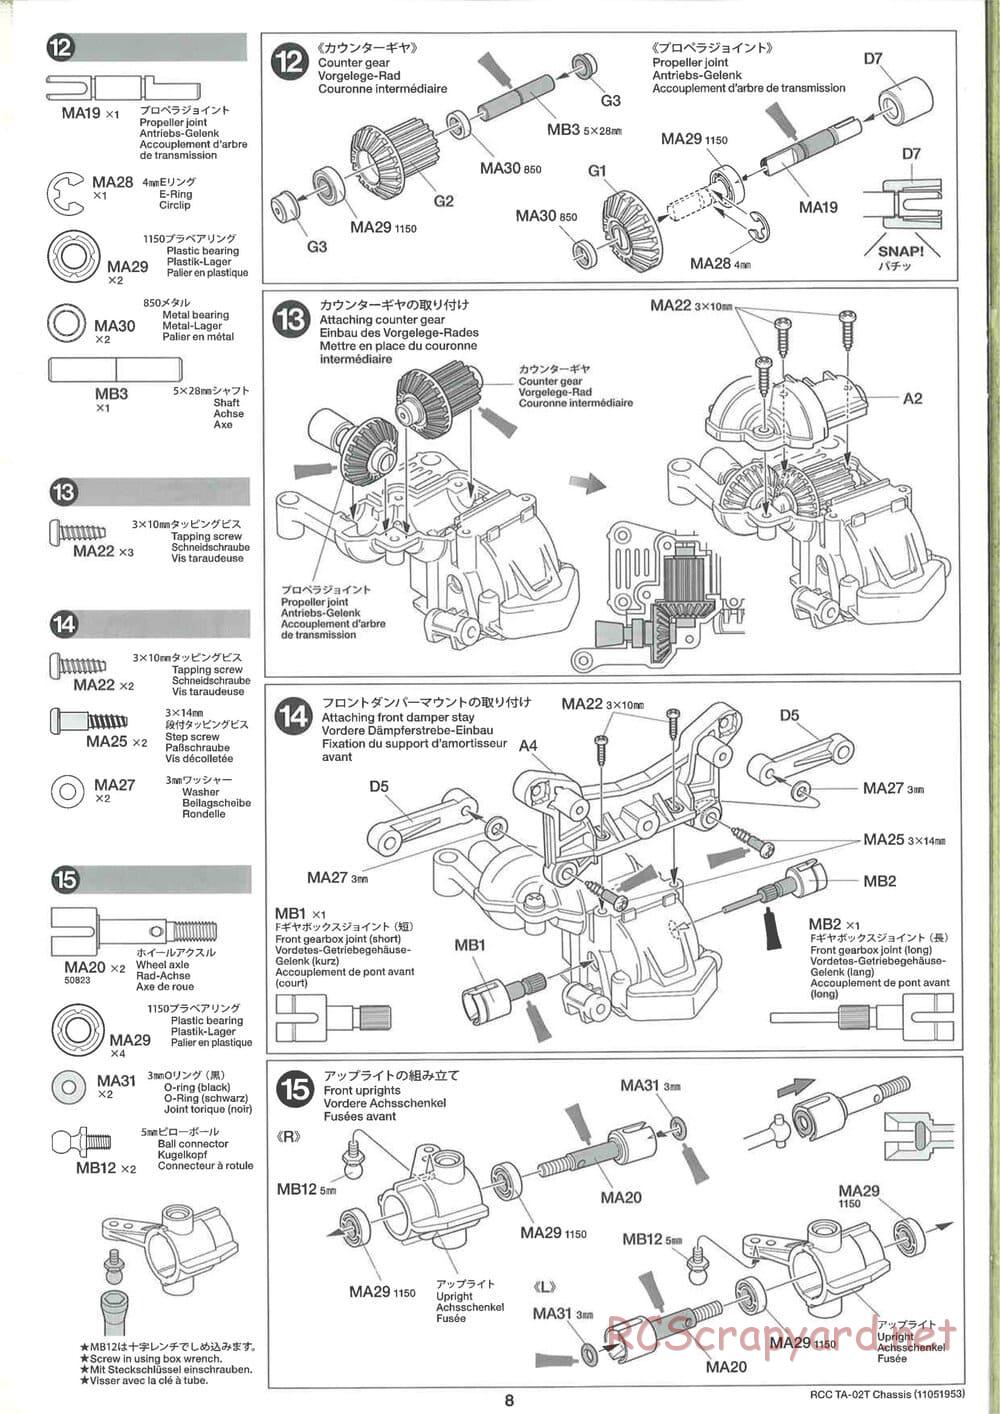 Tamiya - TA-02T Chassis - Manual - Page 8